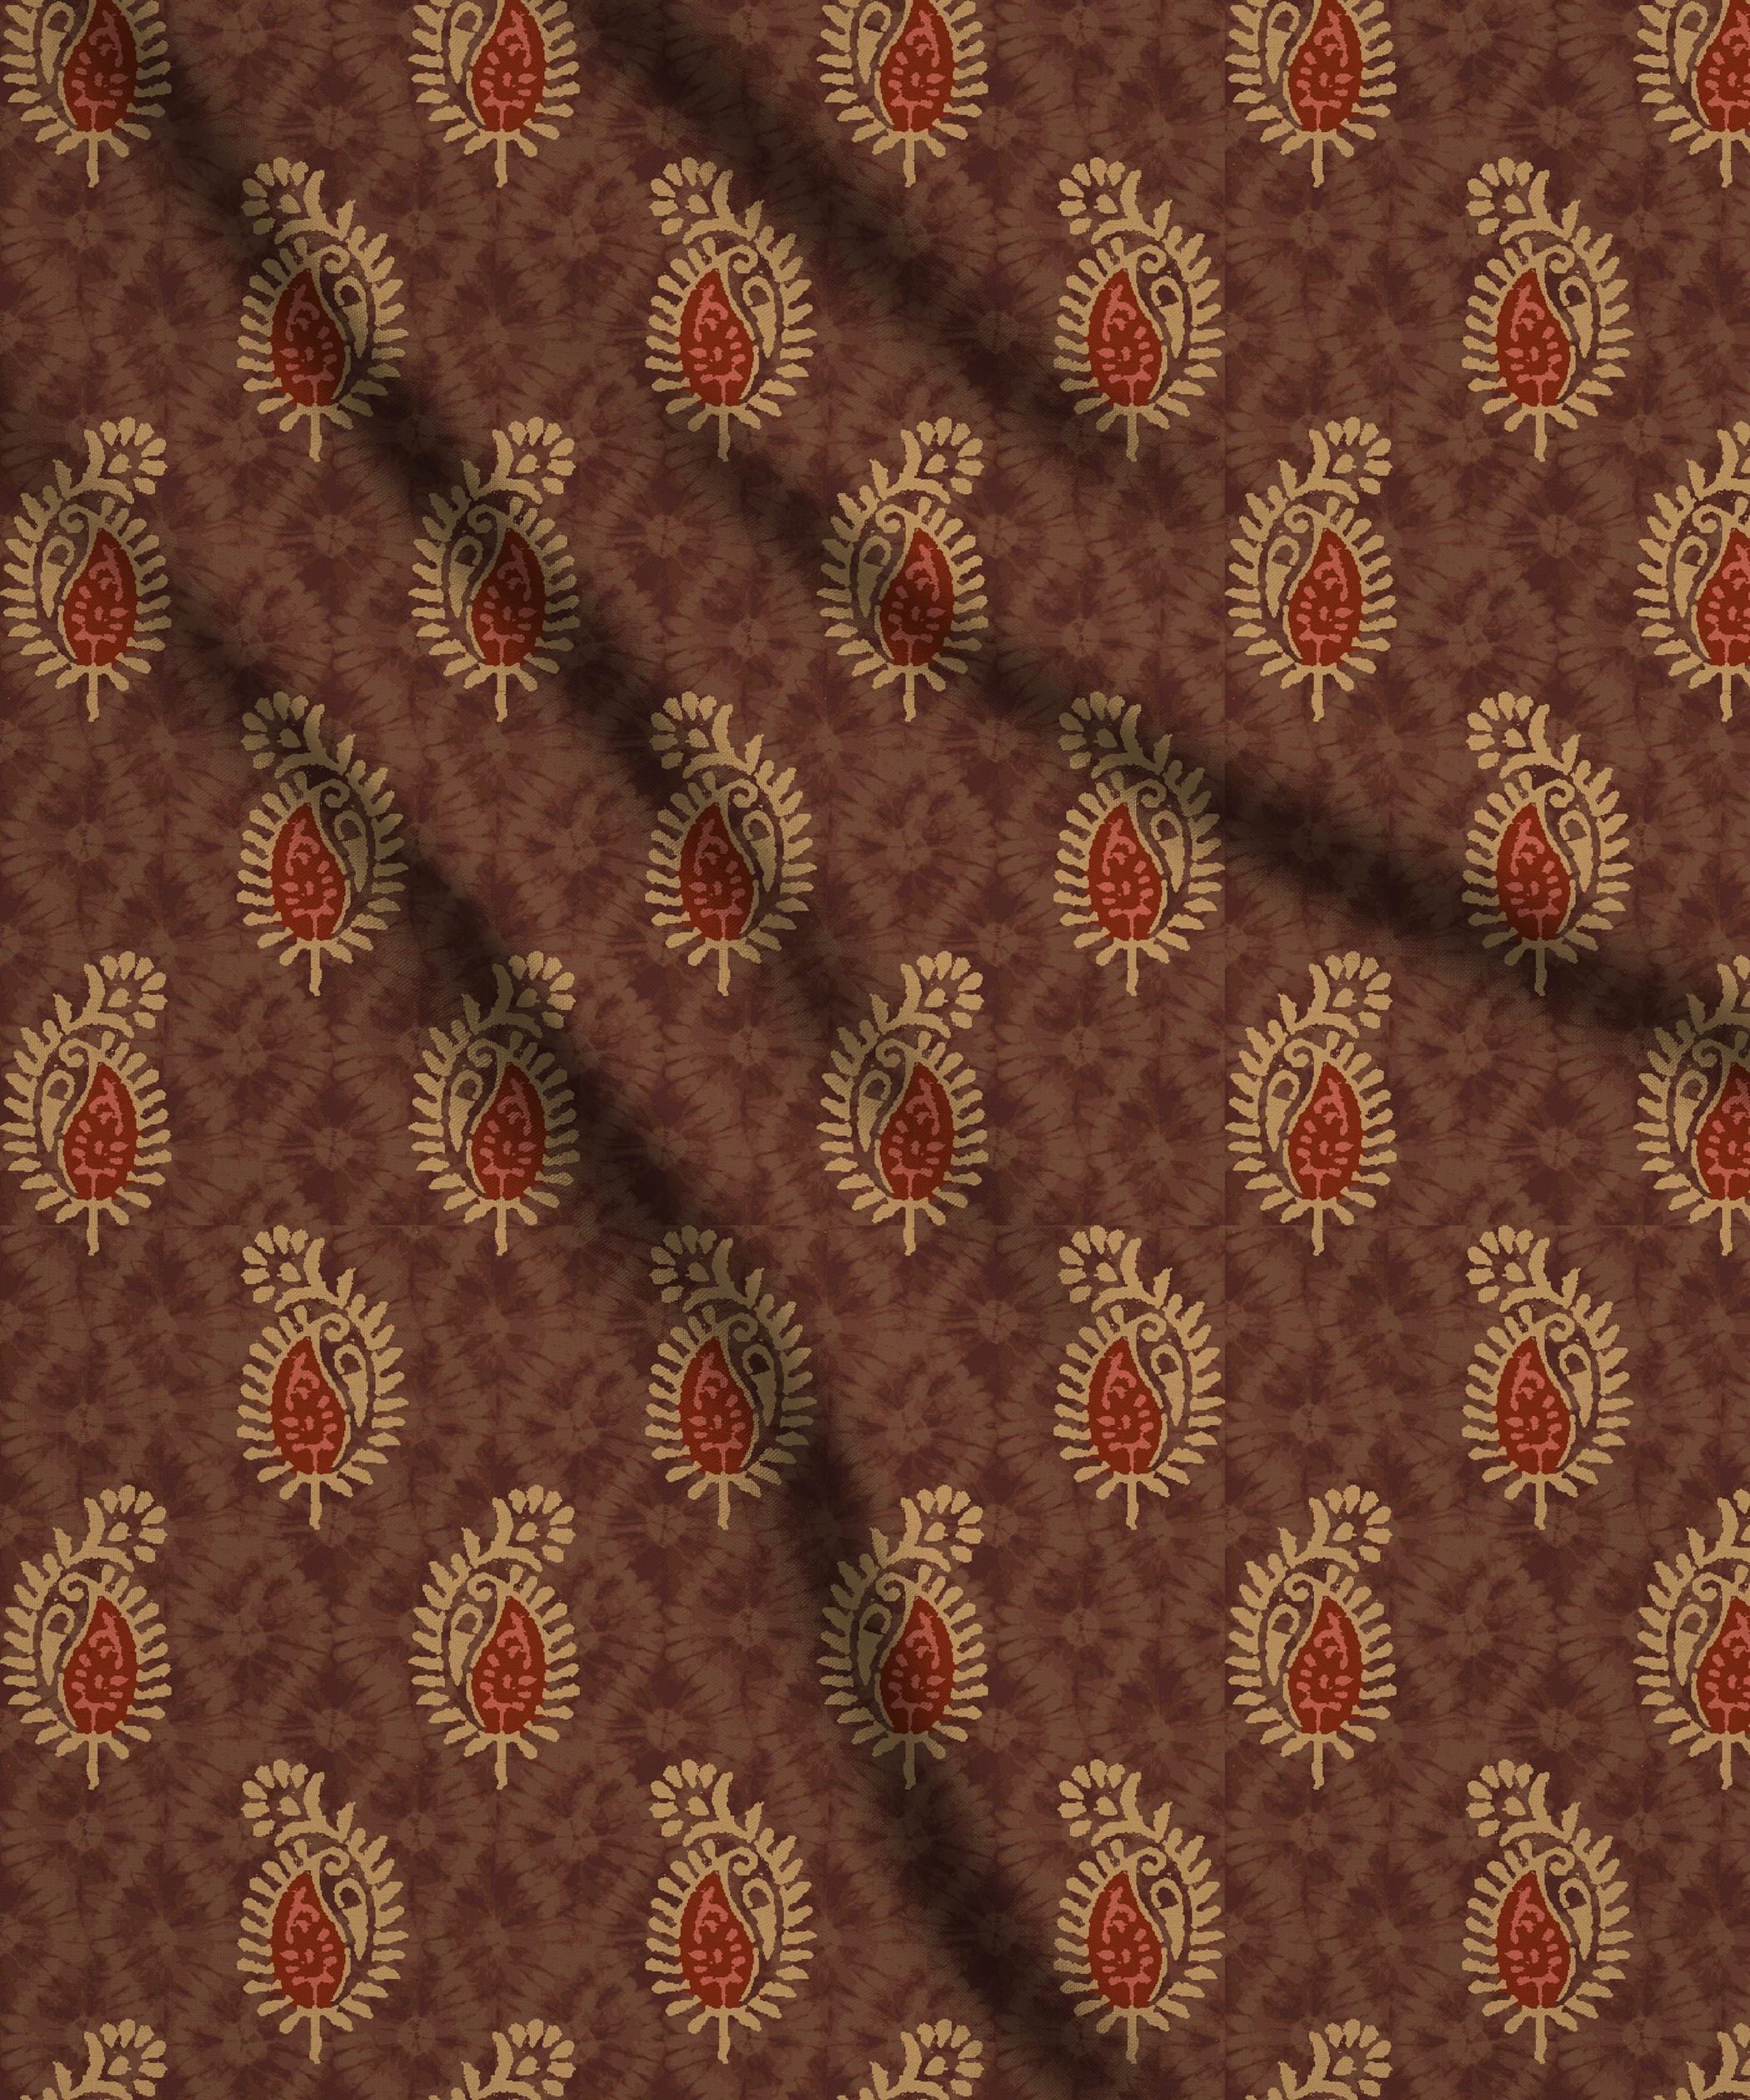 Copper Brown-Shibori with Batik Print